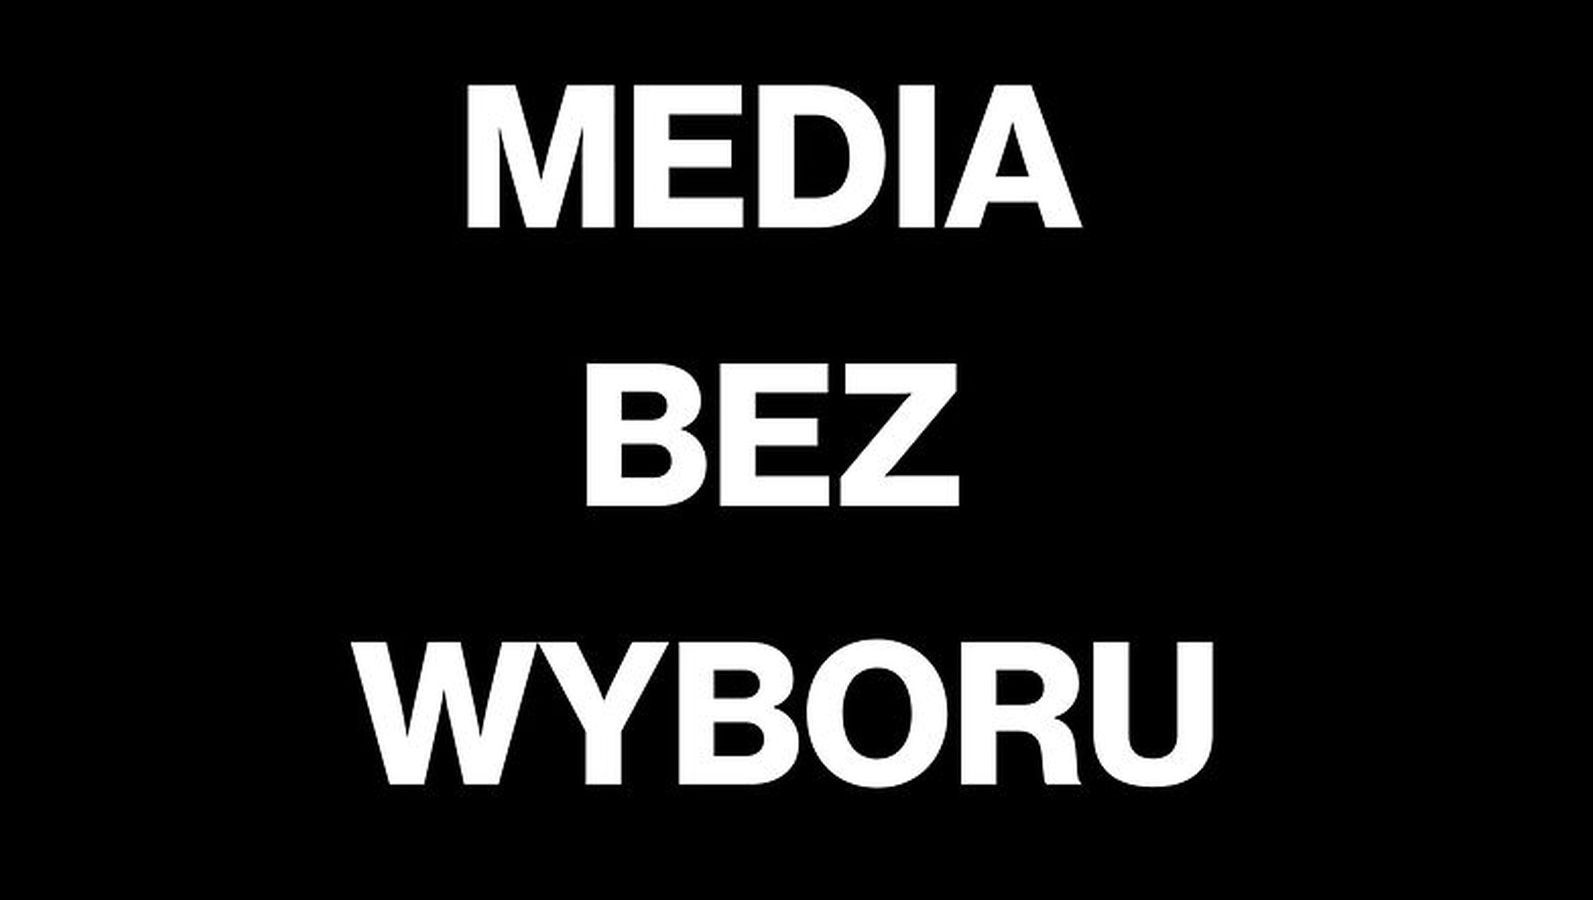 "Media bez wyboru". Dlaczego nie działały o2, WP i inne polskie media?